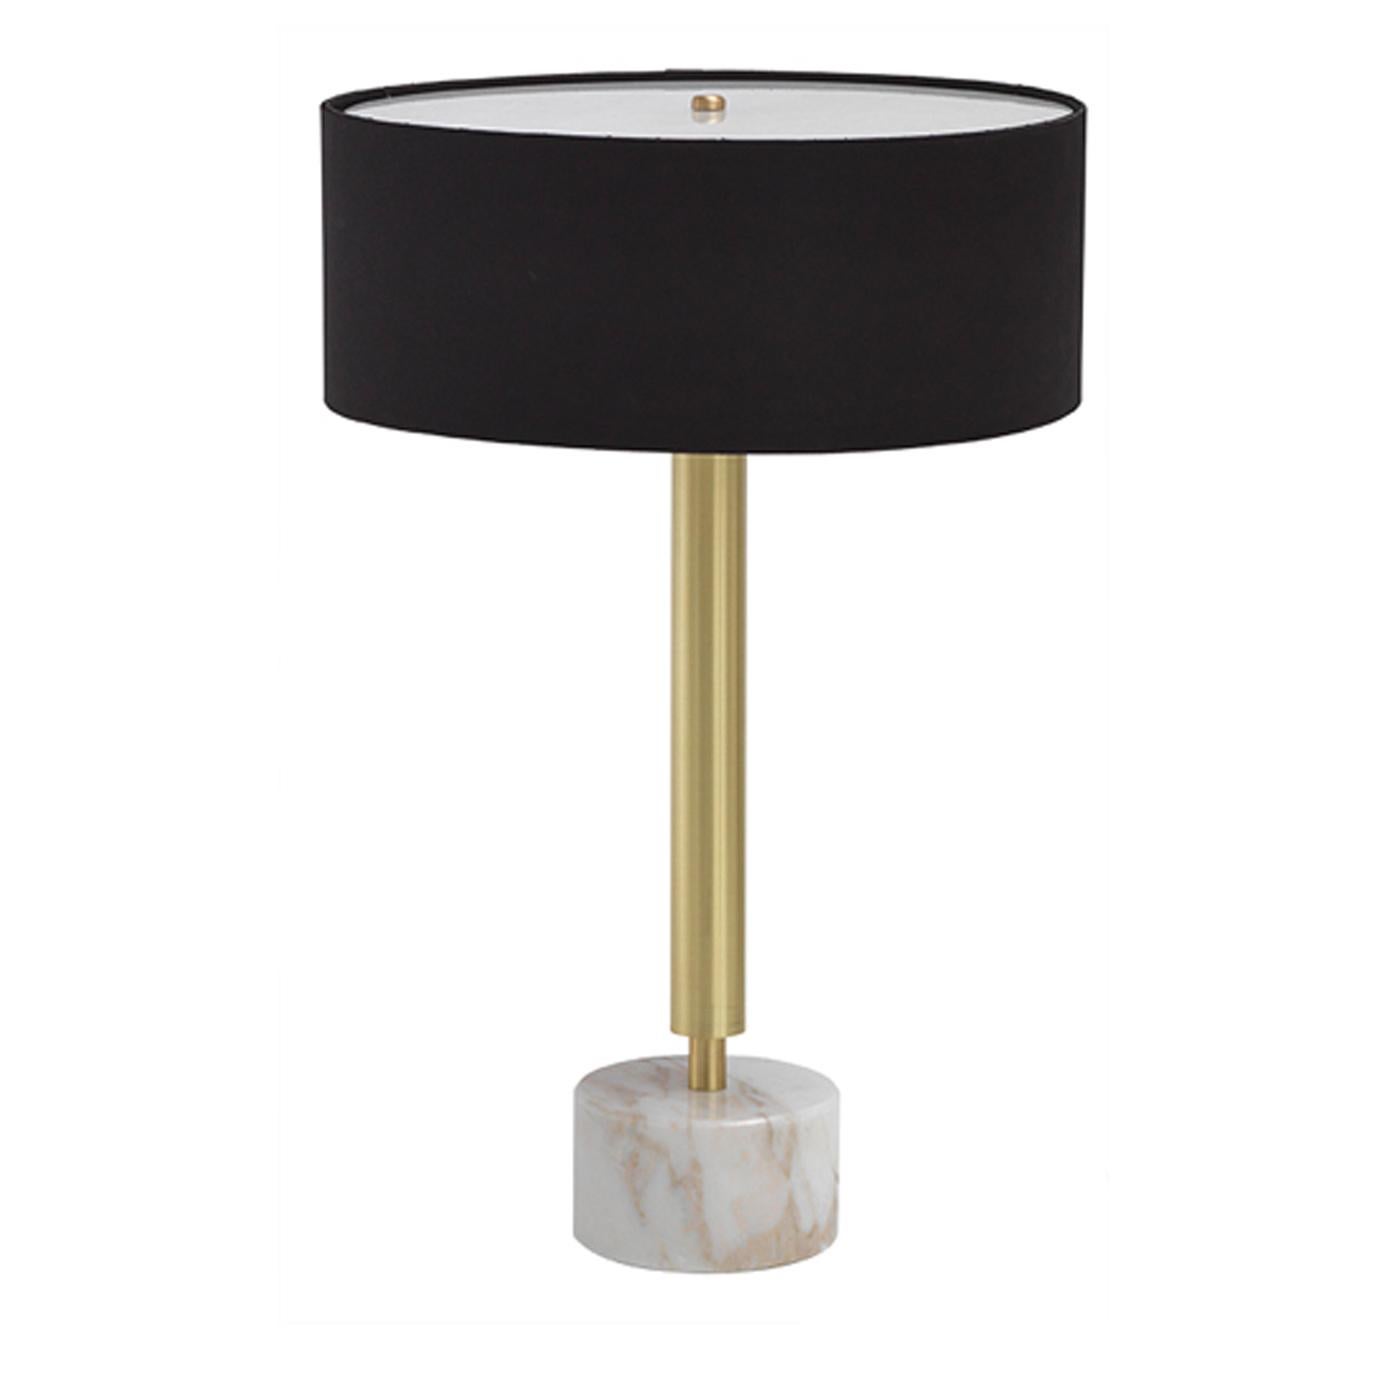 Italian Ettore Round Table Lamp